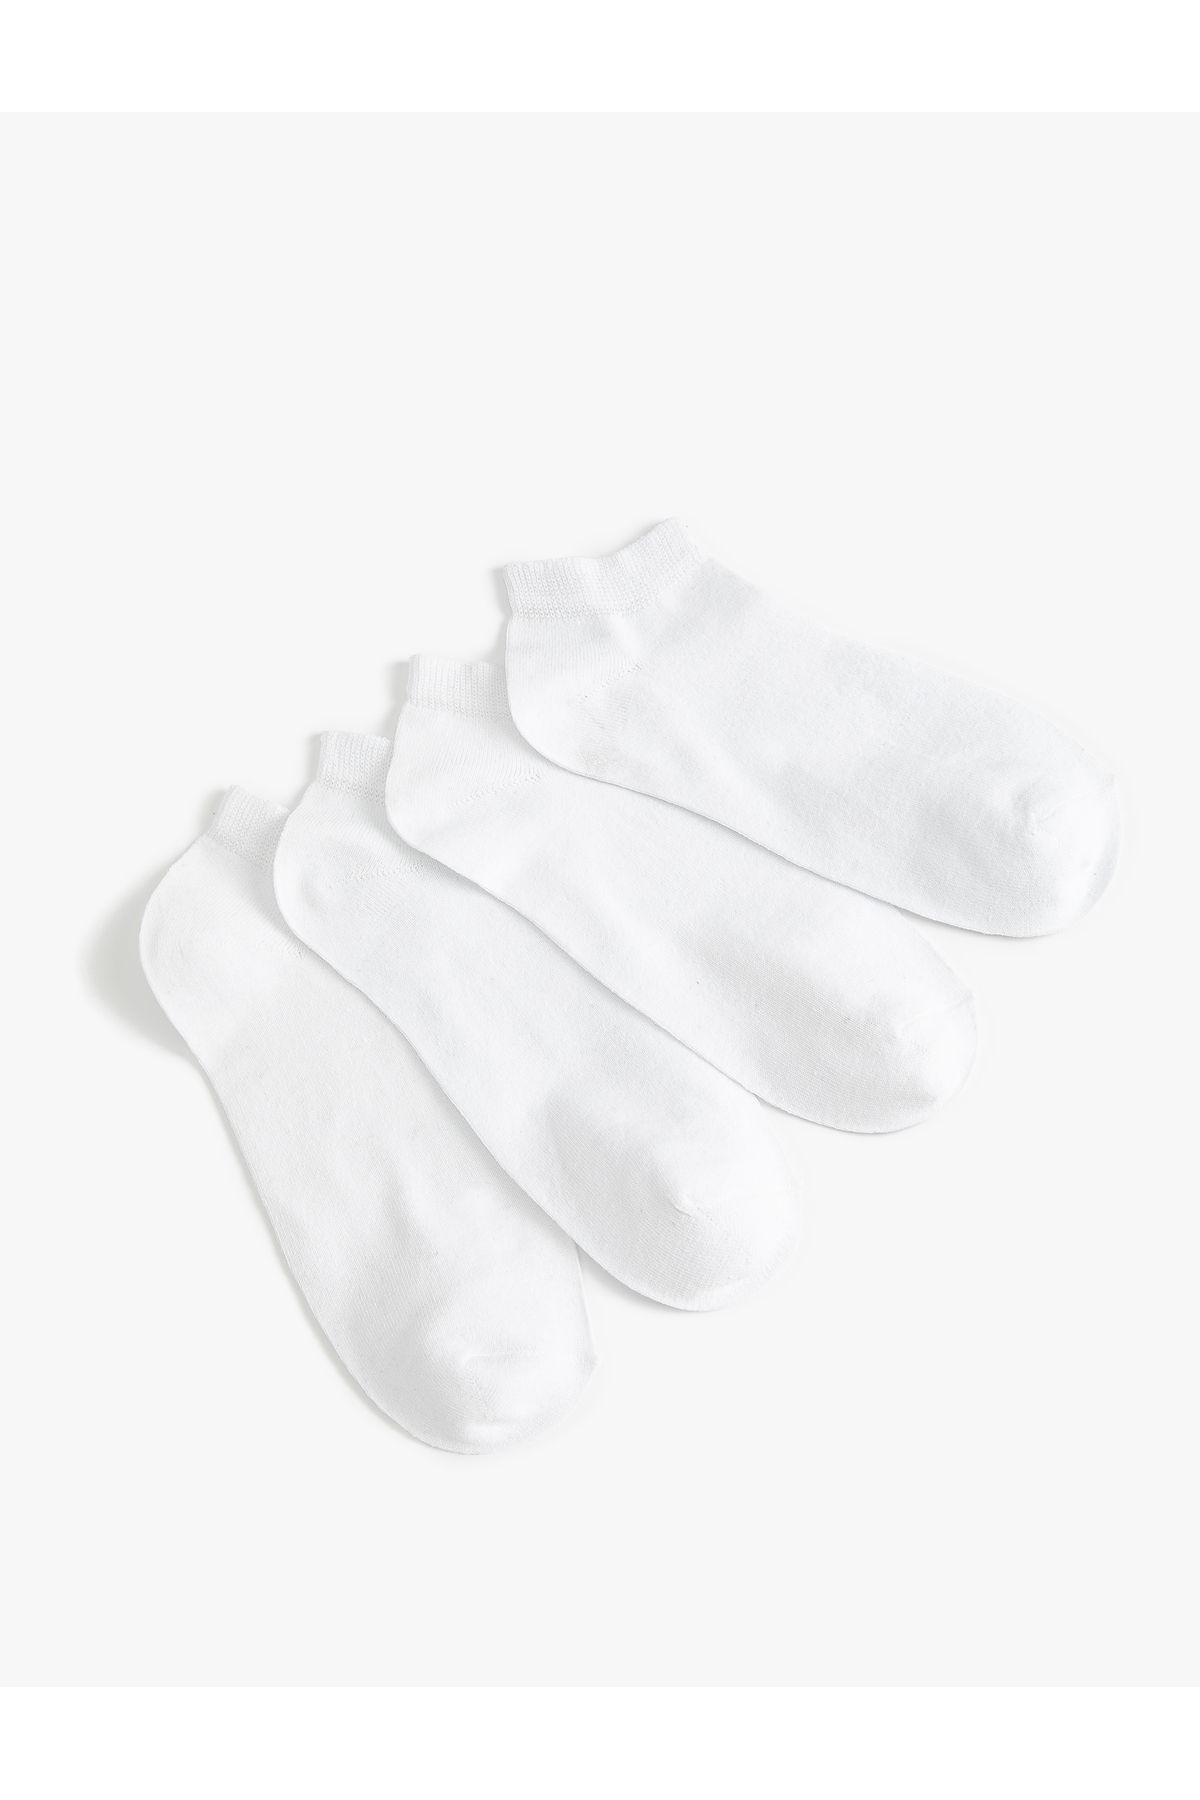 Koton Basic 4'lü Patik Çorap Seti Çok Renkli